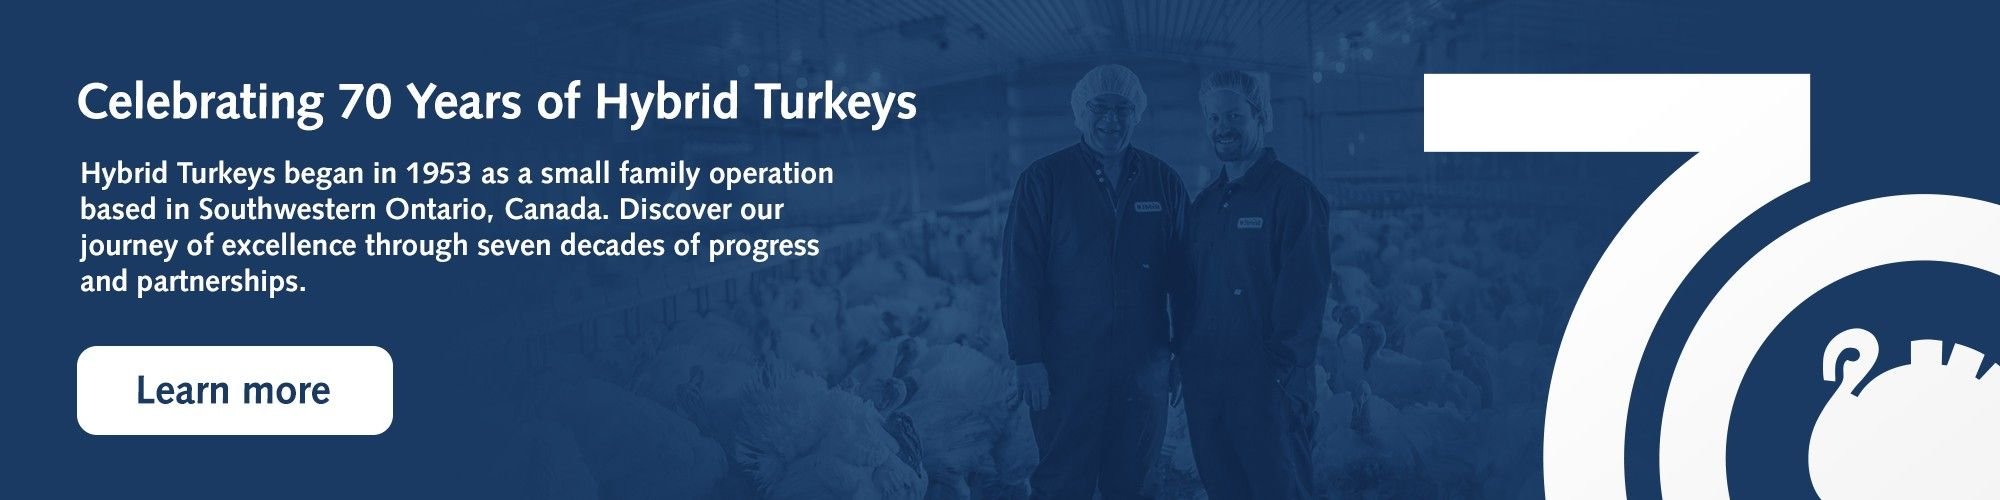 hybrid-turkeys-cta-banner